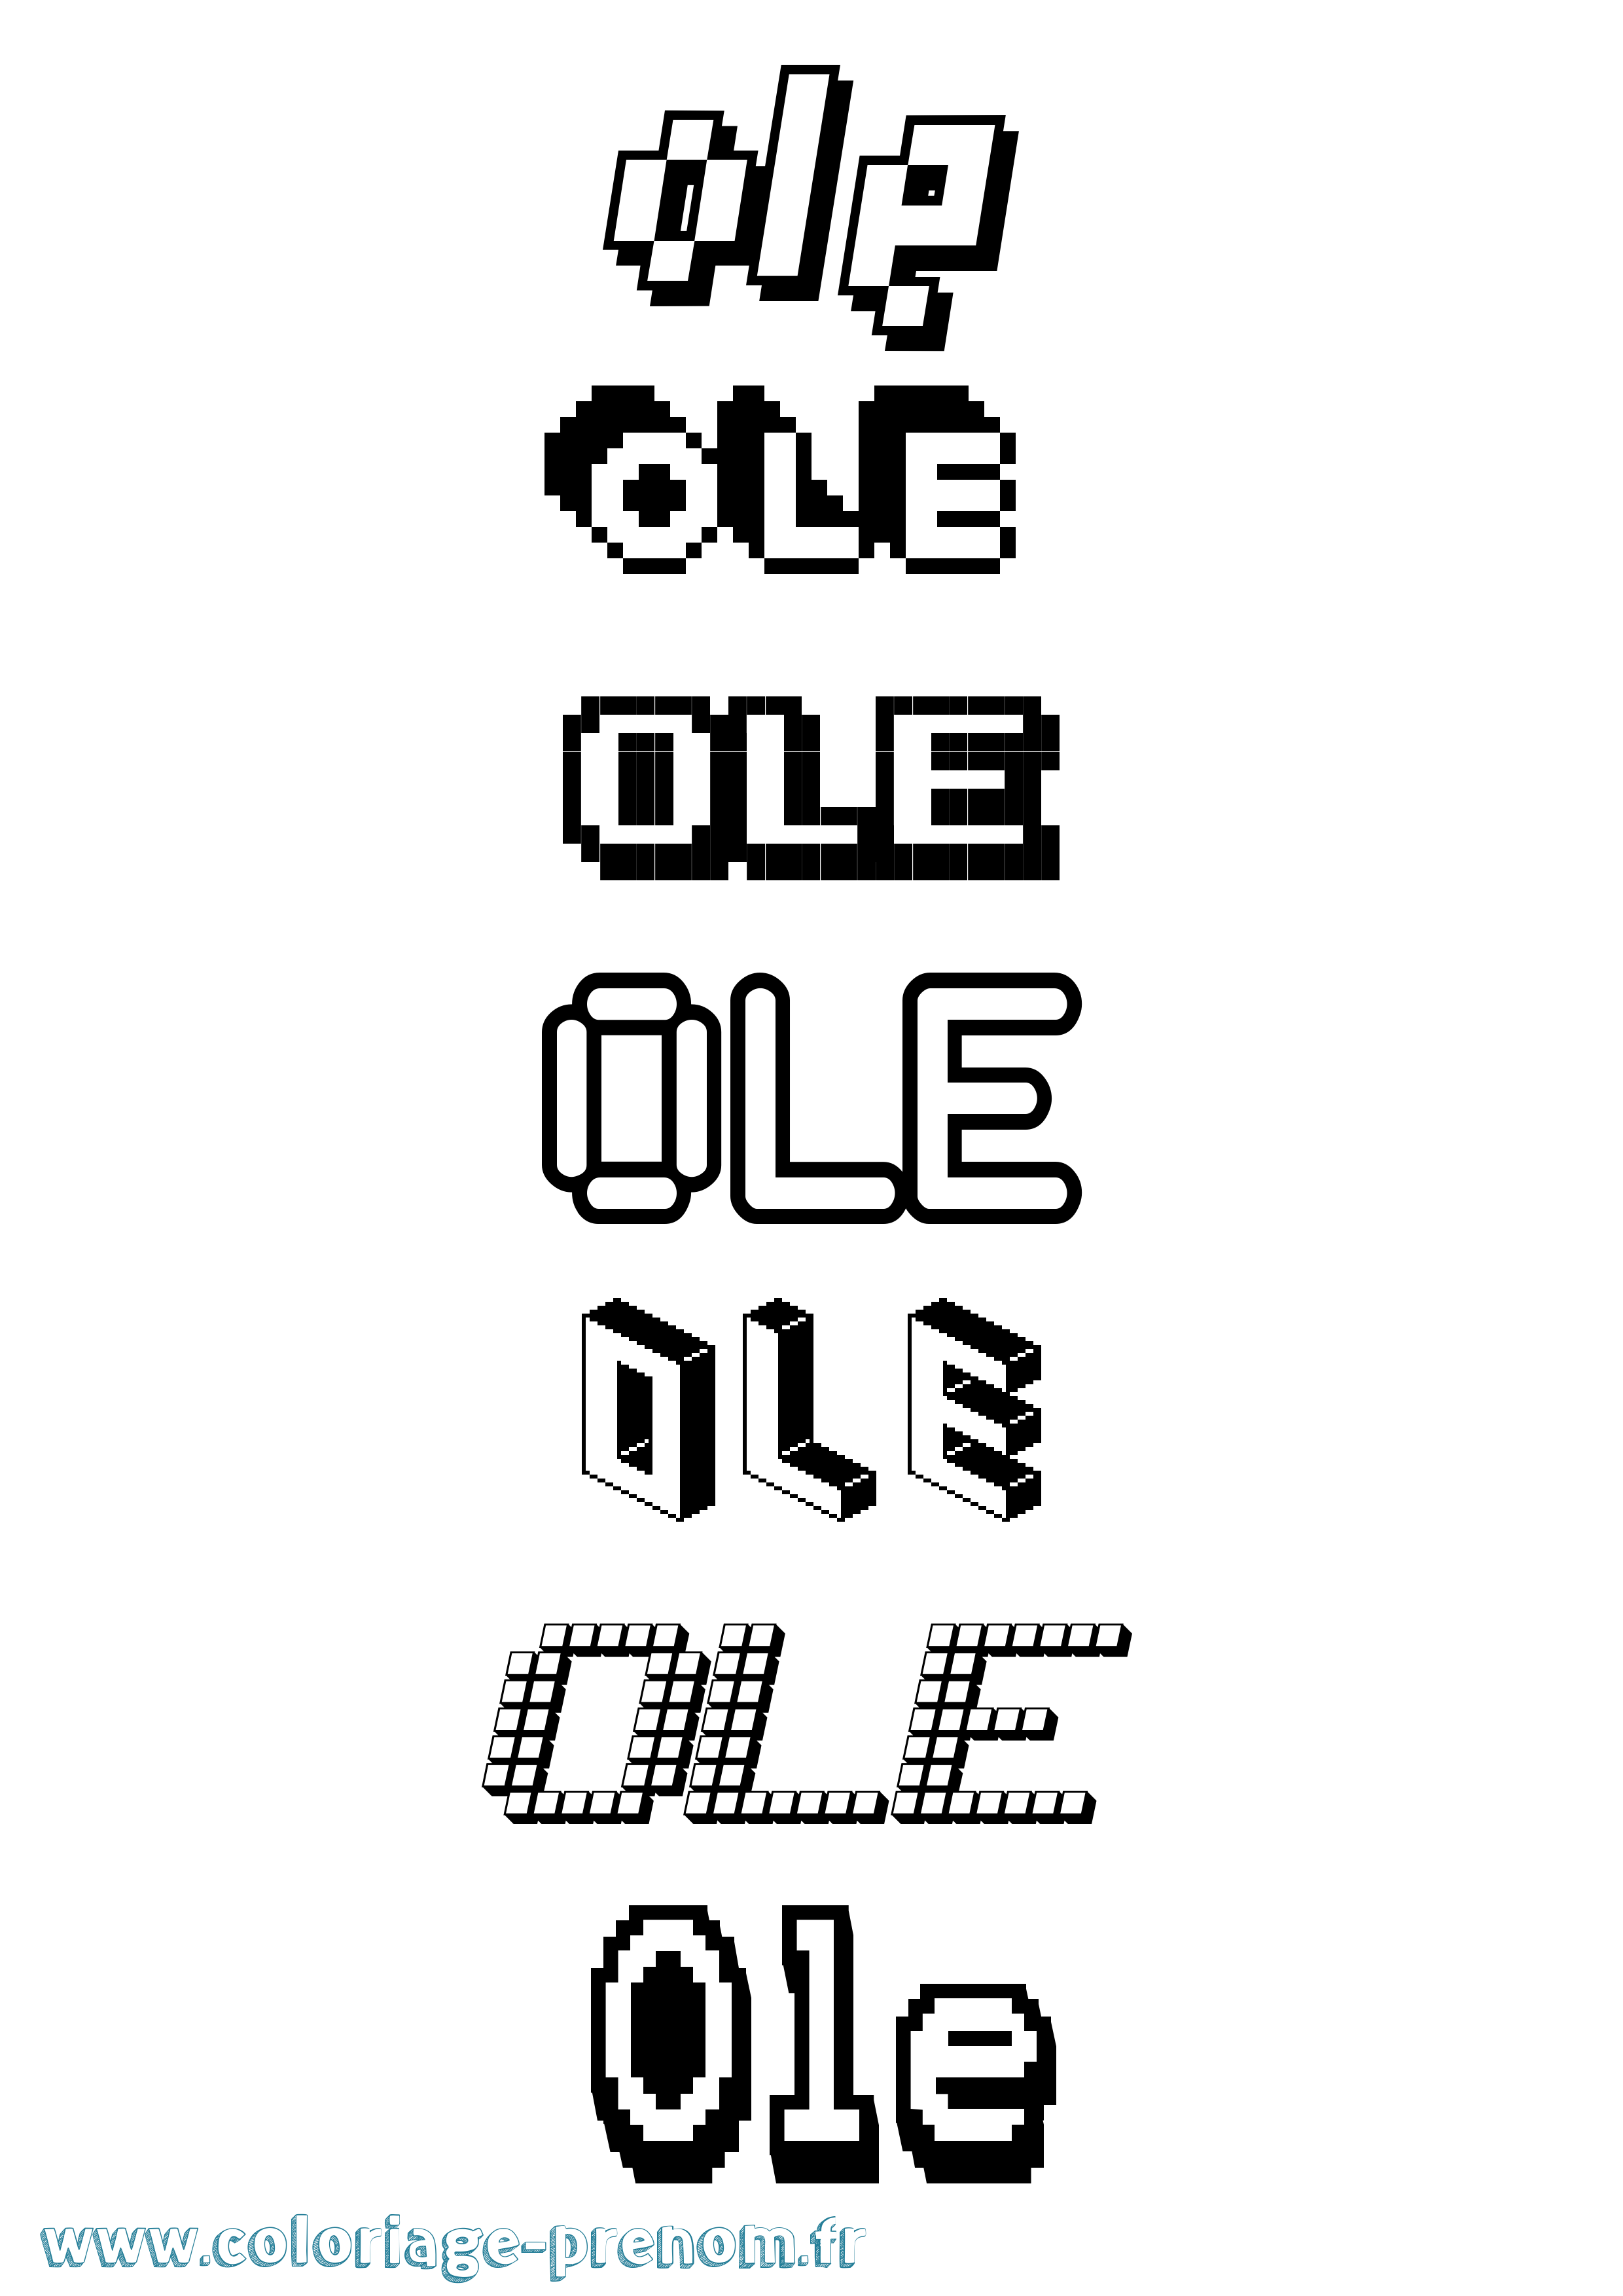 Coloriage prénom Ole Pixel